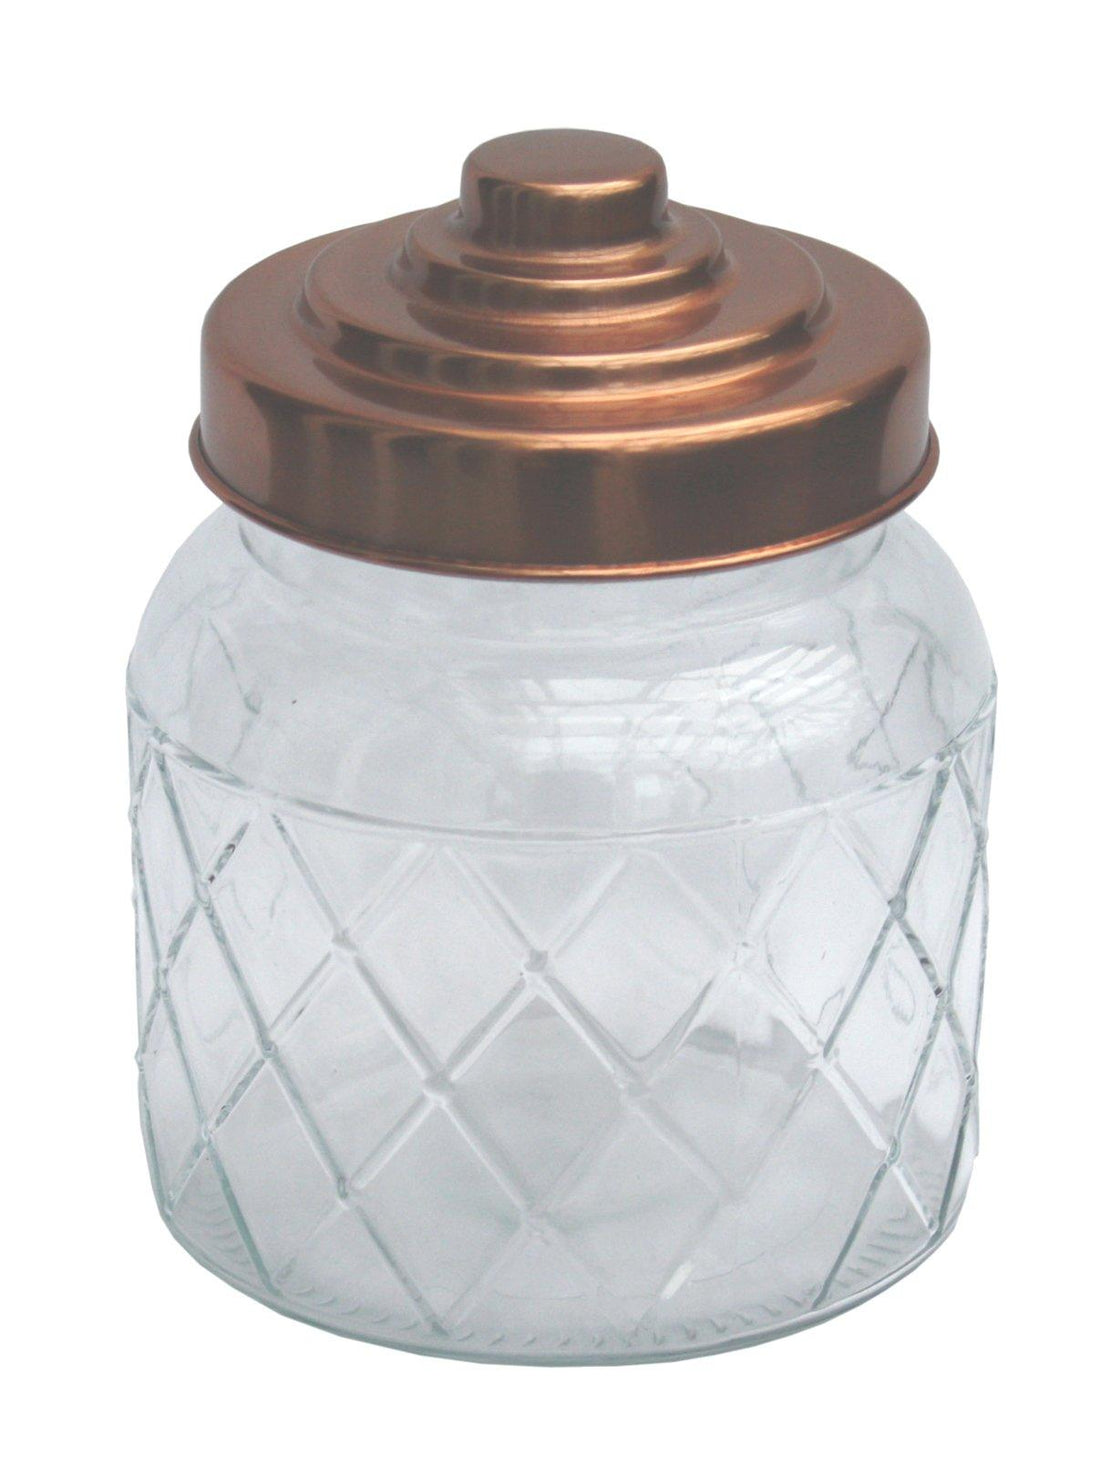 Round Glass Jar With Copper Lid - 5.5 Inch - £12.99 - Kitchen Storage 